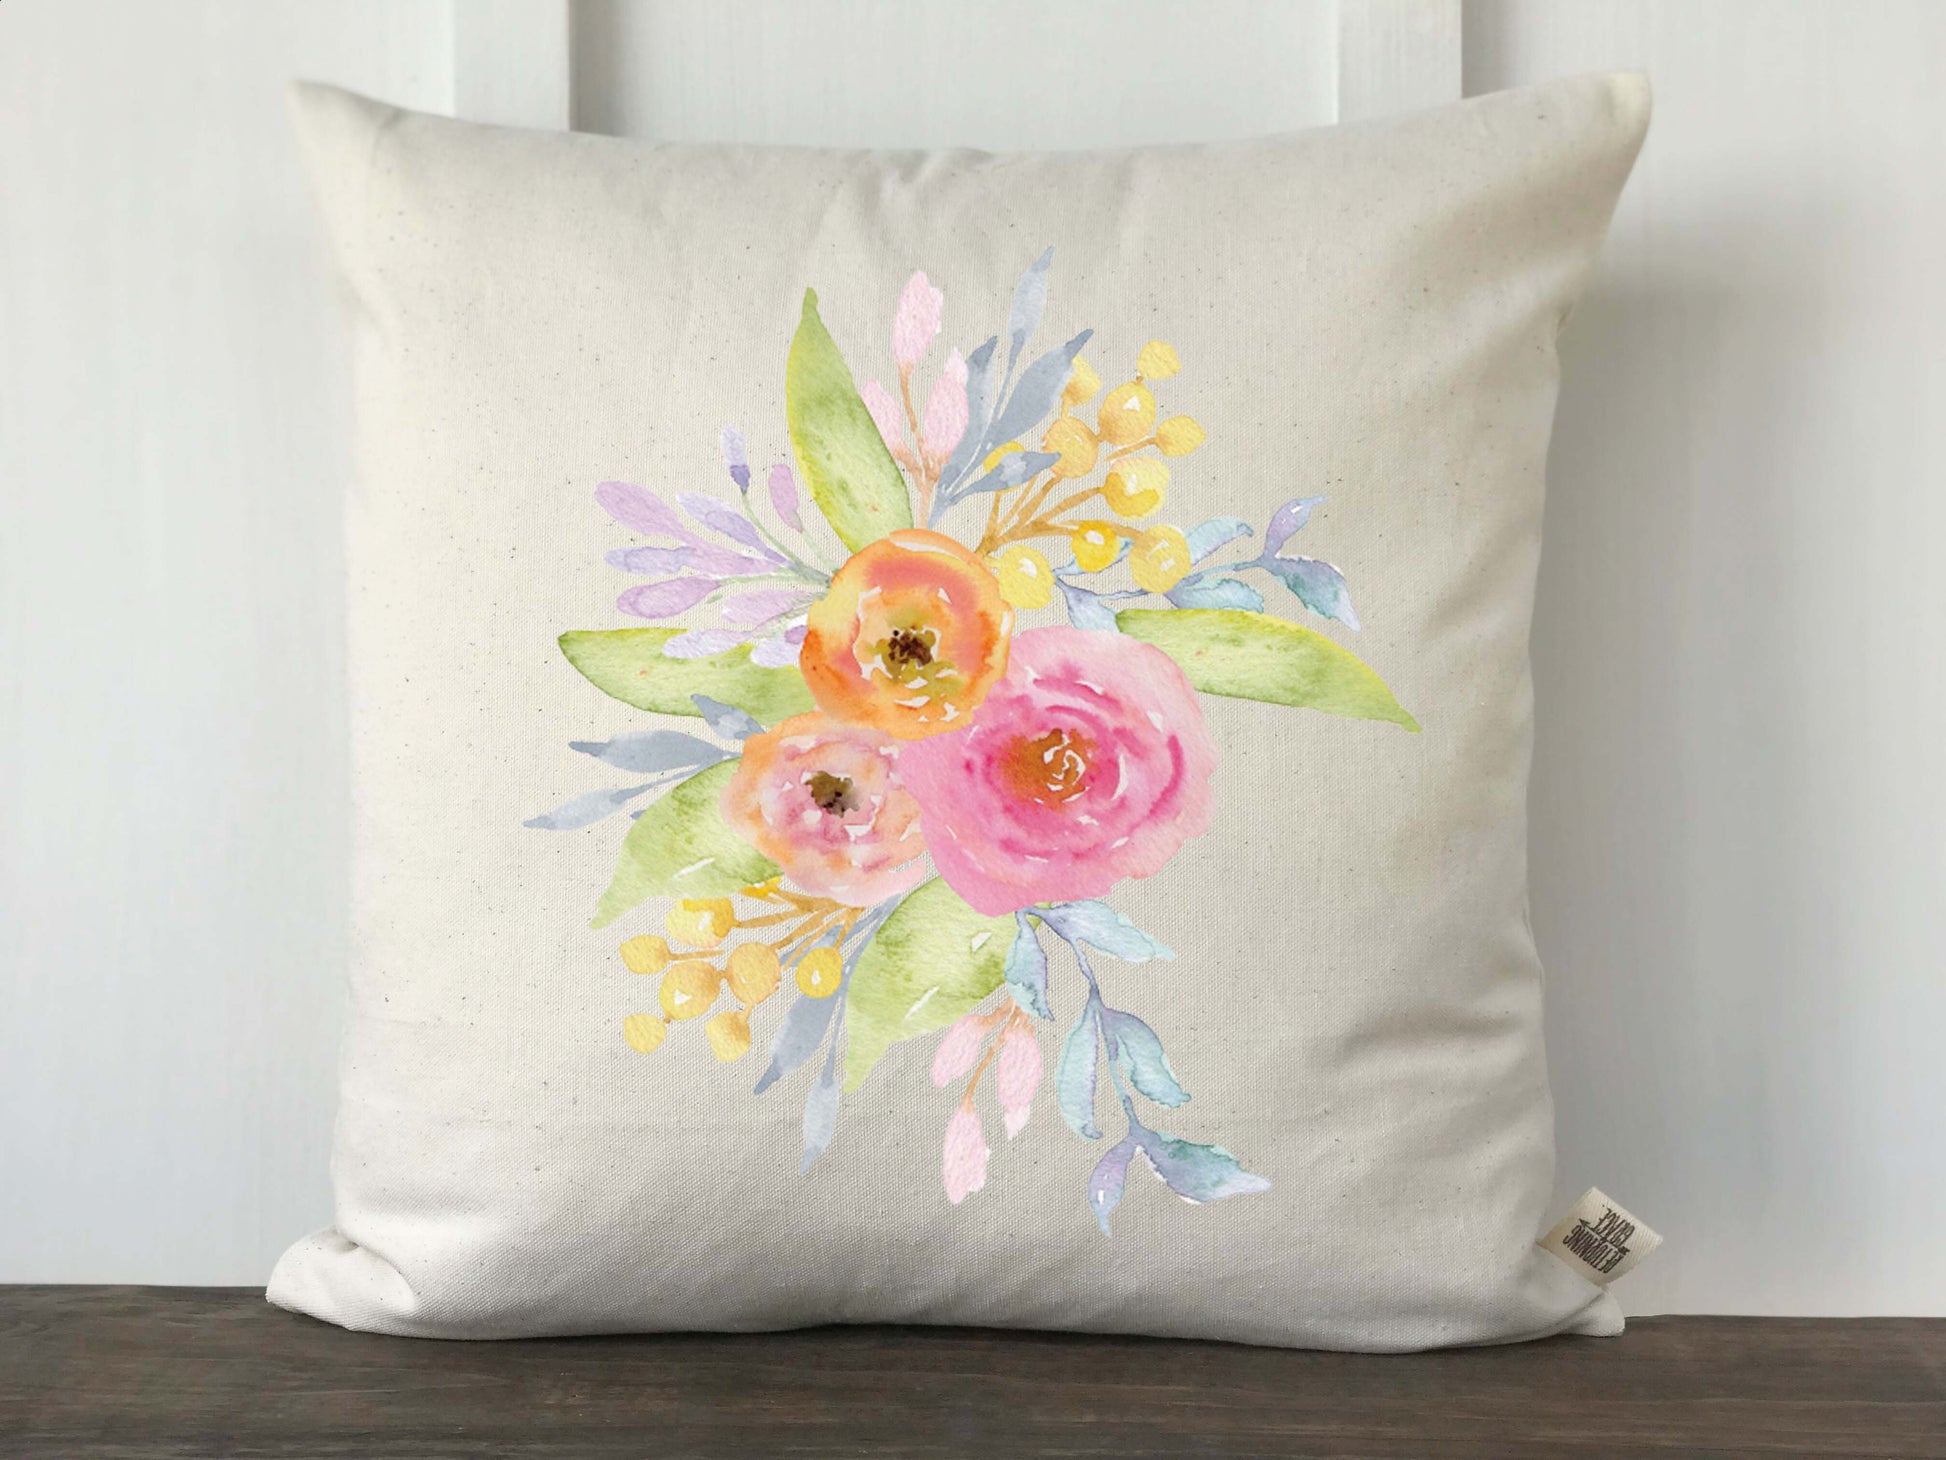 Watercolor Floral Arragement Pillow Cover - Returning Grace Designs